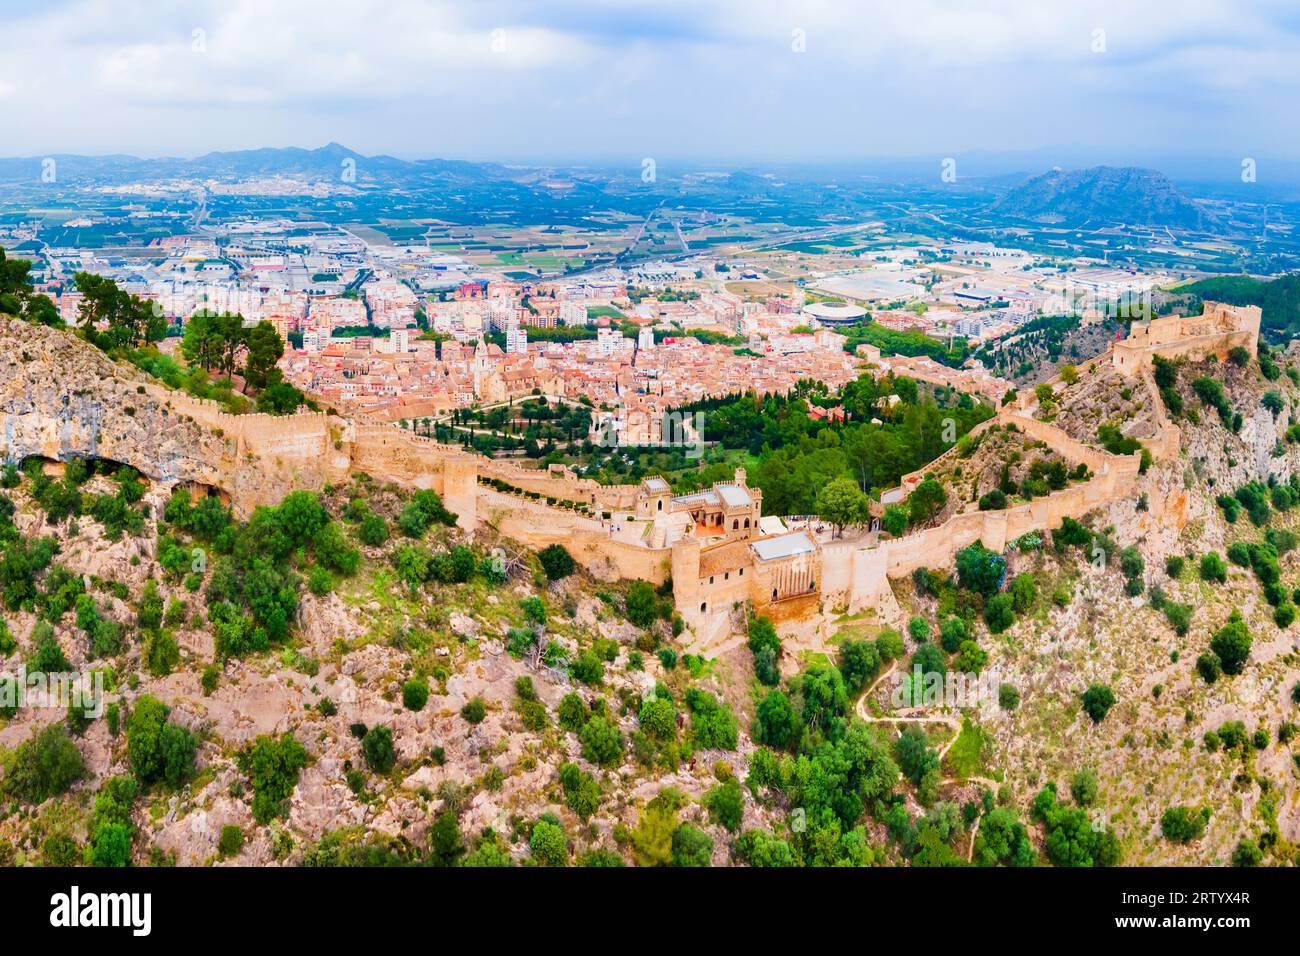 Vista panoramica aerea del Castello di Xativa. Castillo de Jativa è un castello situato nella città di Xativa vicino a Valencia, in Spagna. Foto Stock